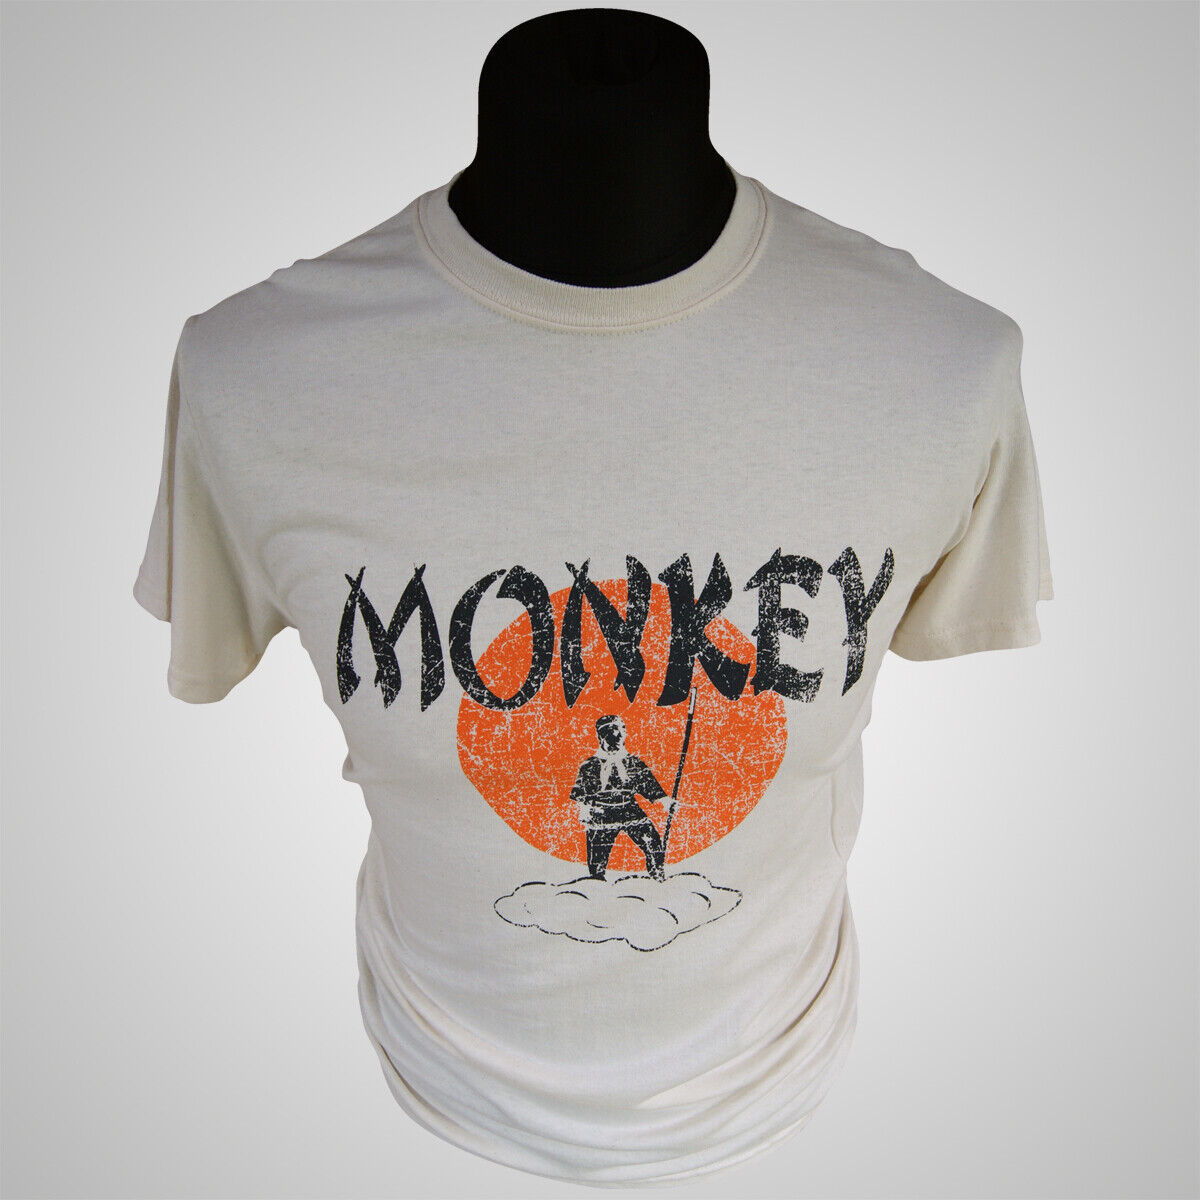 Monkey T Shirt (Colour Options)